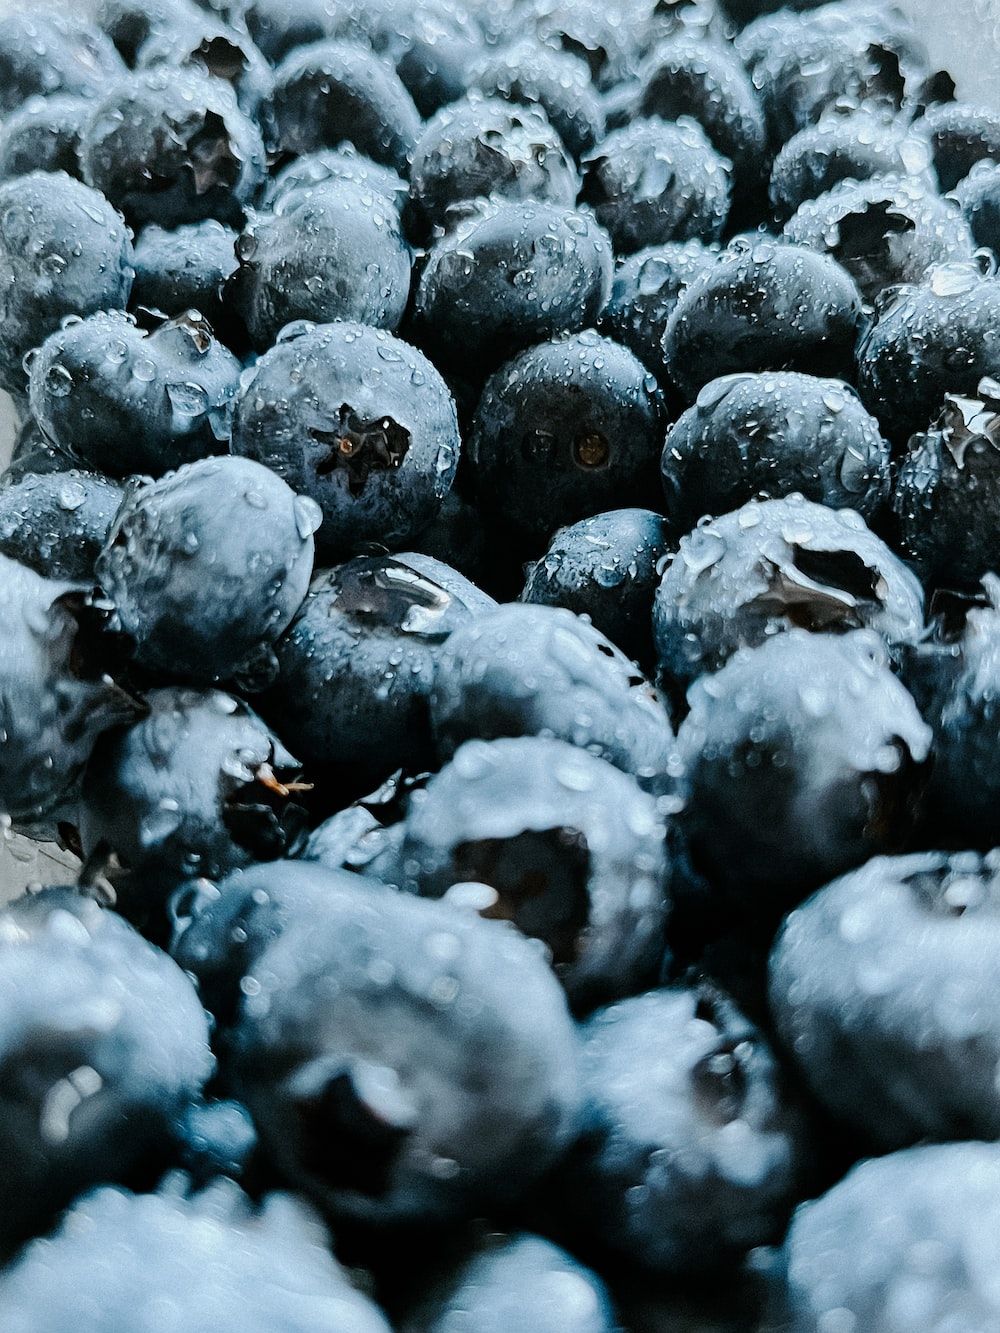  Obst Hintergrundbild 1000x1333. Foto zum Thema Ein haufen blaubeeren mit wassertröpfchen darauf